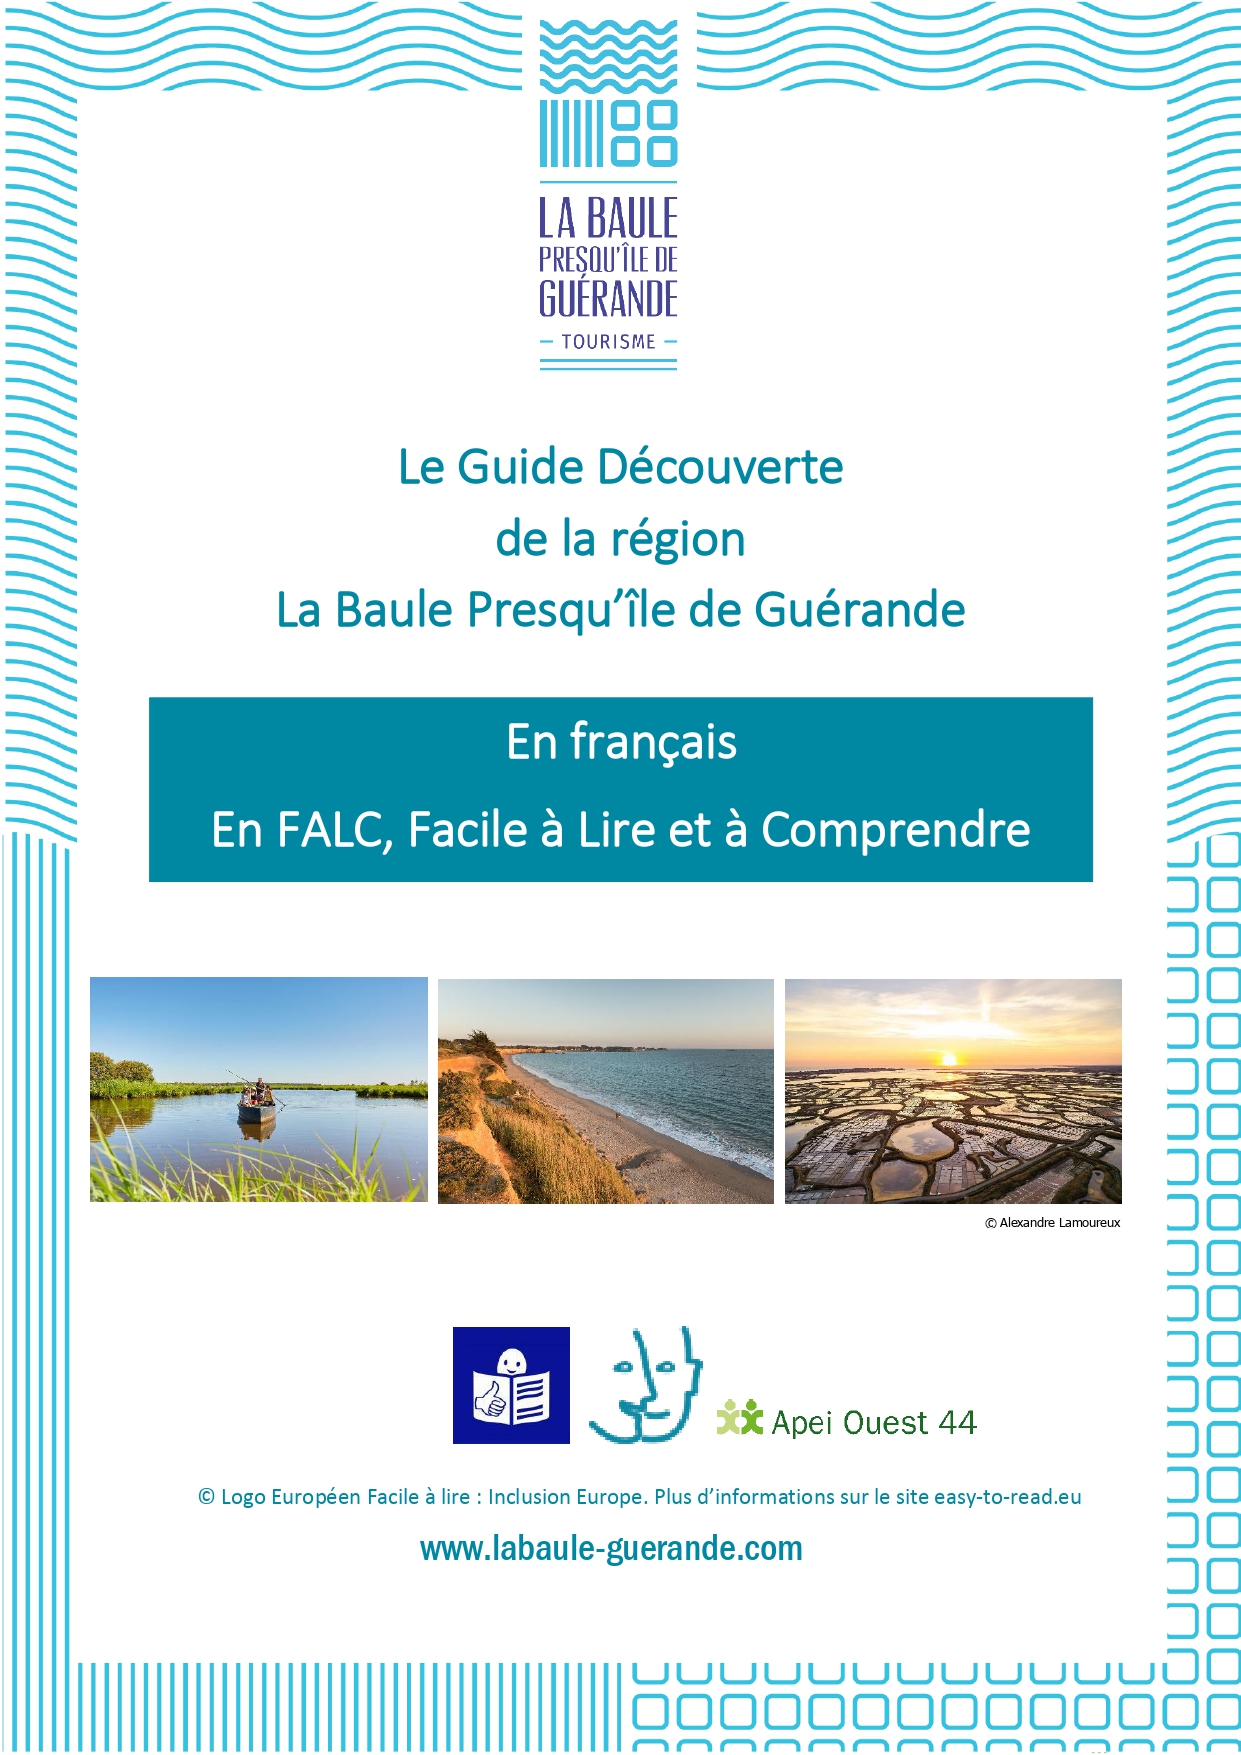 Couverture du guide découverte 2020 en FALC de la Baule Presqu'île de Guérande